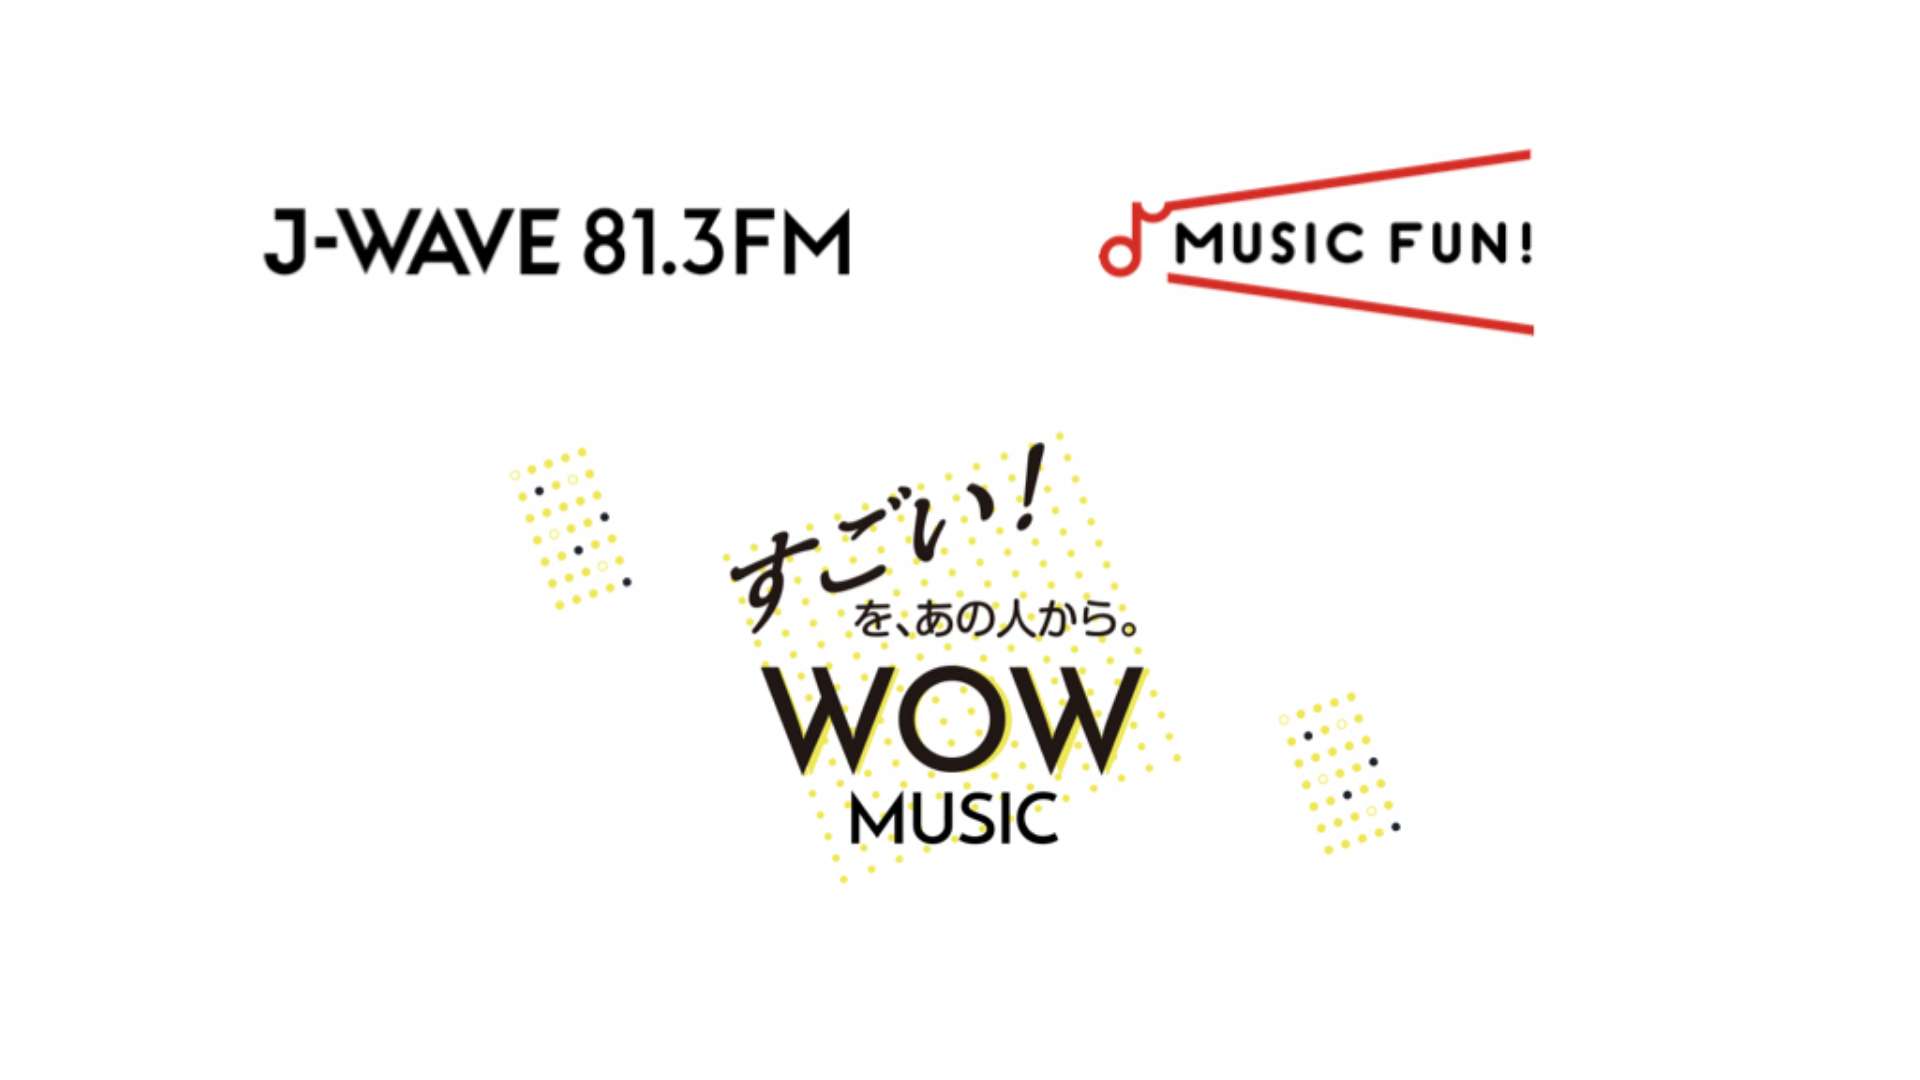 J-WAVE（81.3FM）×「MUSIC FUN !」連動企画 “すごい”音楽 をつくるあのクリエイターが”WOW”と思う音楽を語る新番組「WOW MUSIC」がスタート！〜4月3日より毎週金曜24時30分OA〜